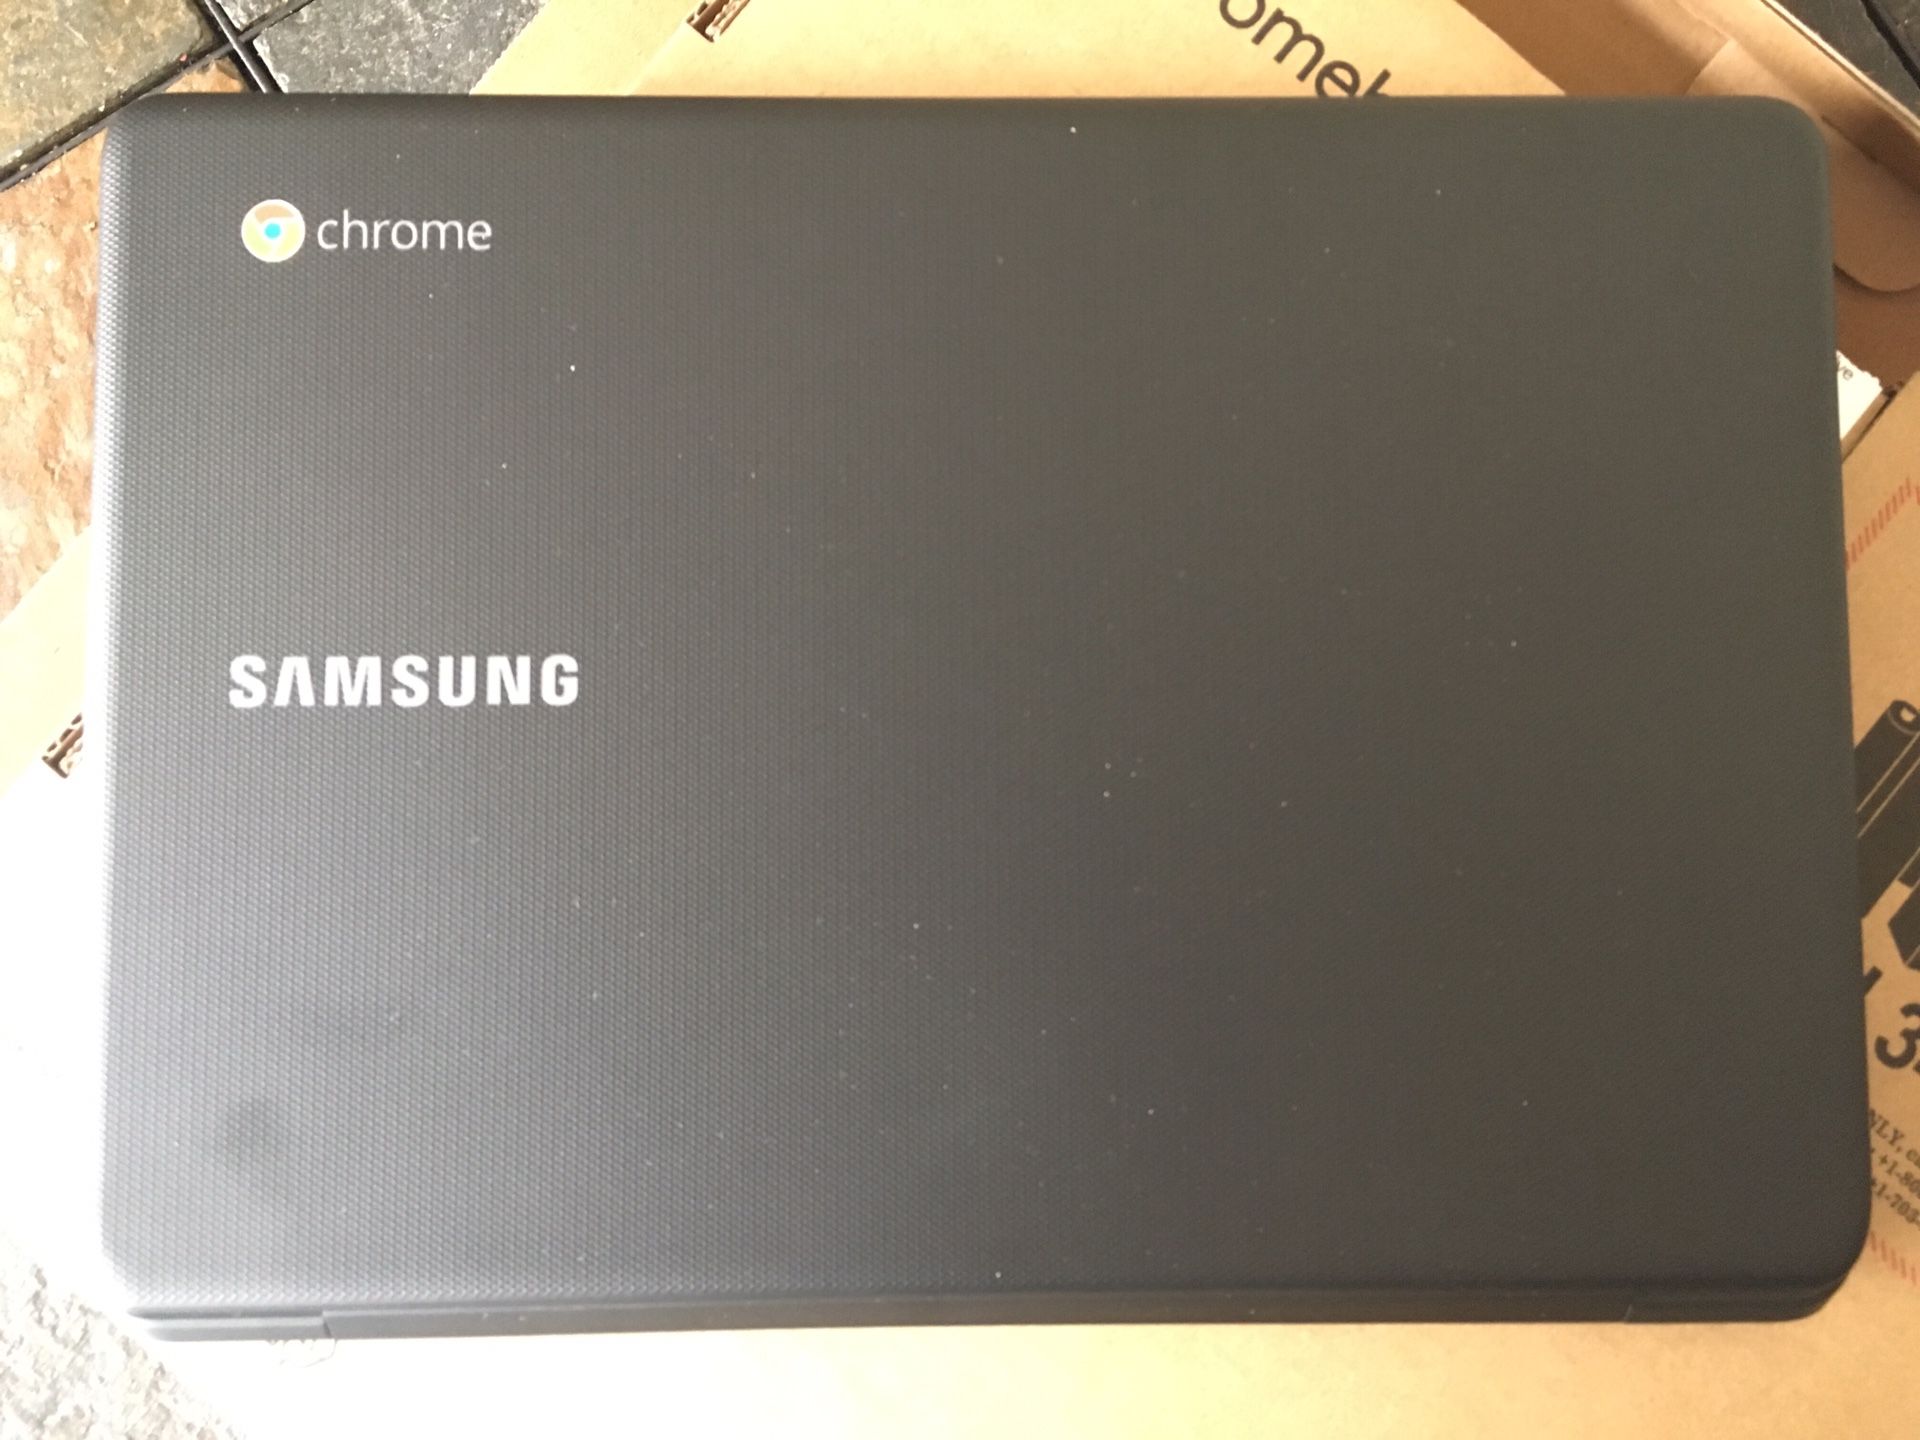 Samsung “Chrome”